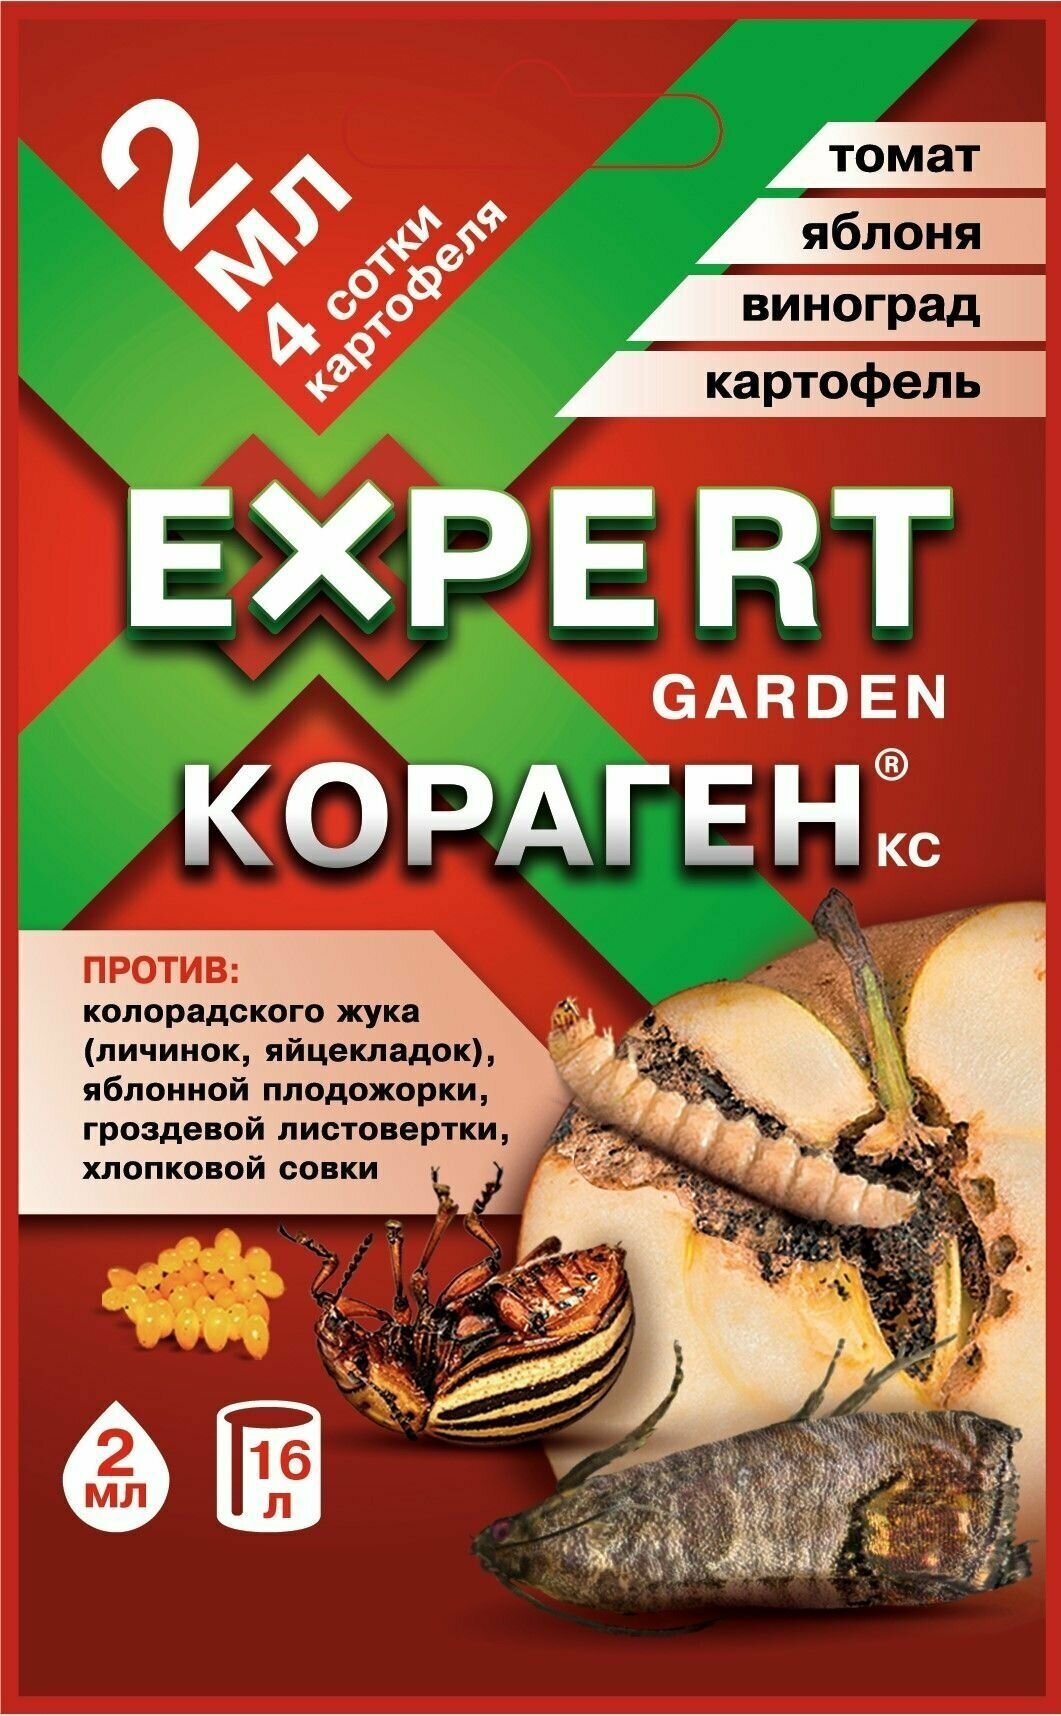 Expert Garden / Кораген, КС 2 мл препарат для защиты растений от вредителей, 5 шт - фотография № 2